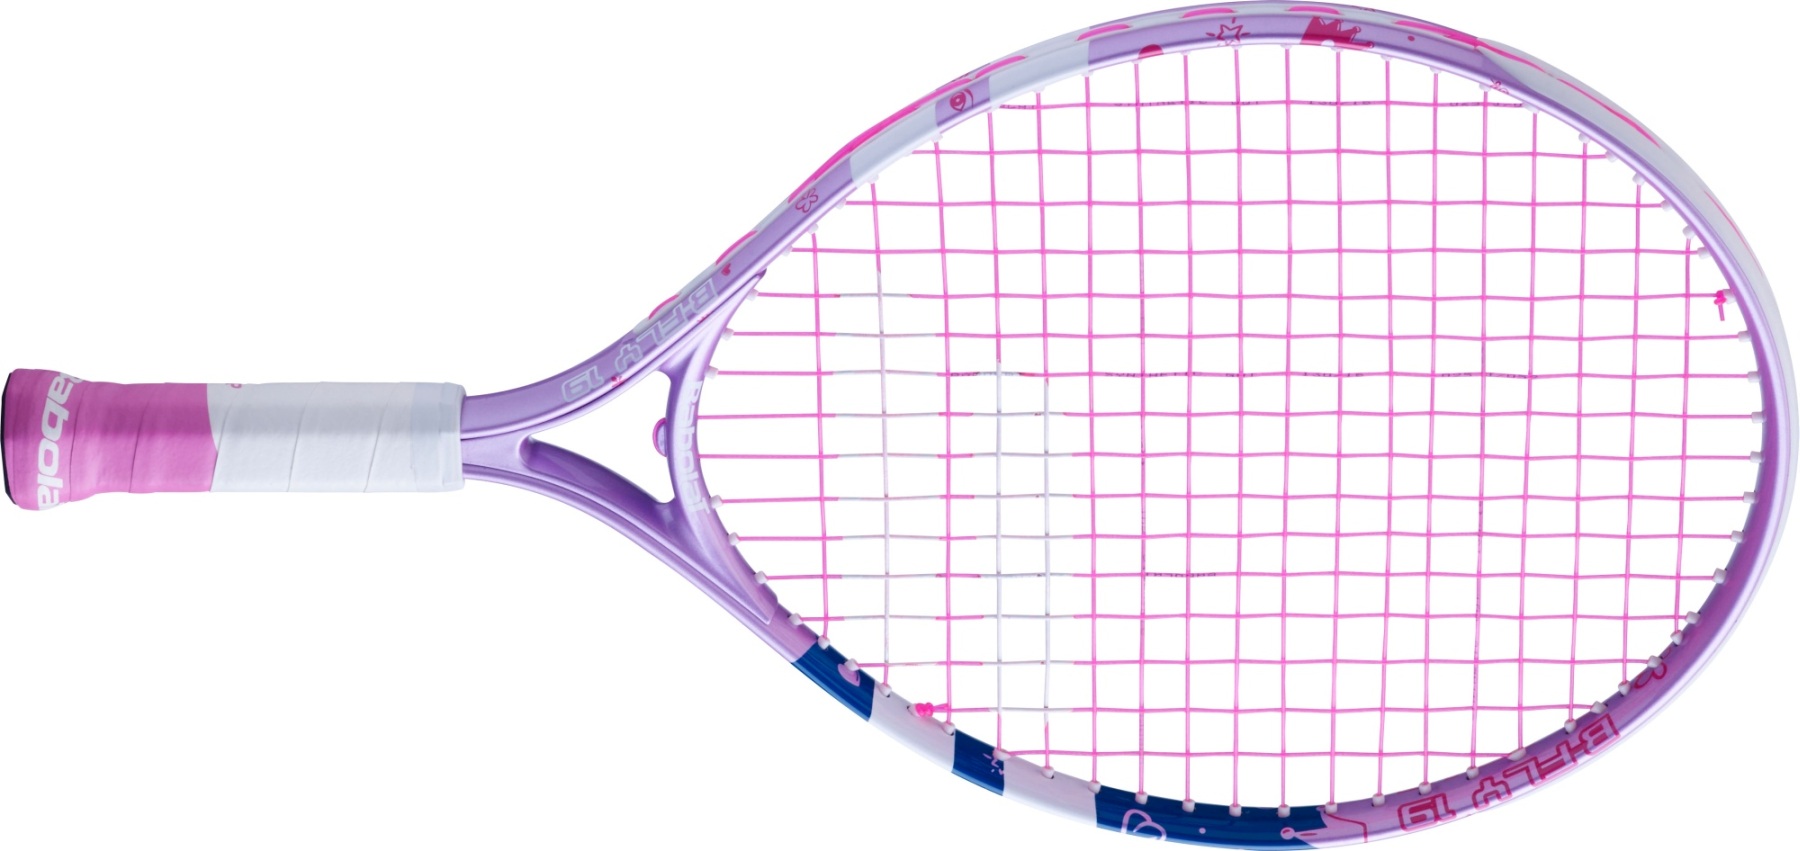 Kids' tennis racquet